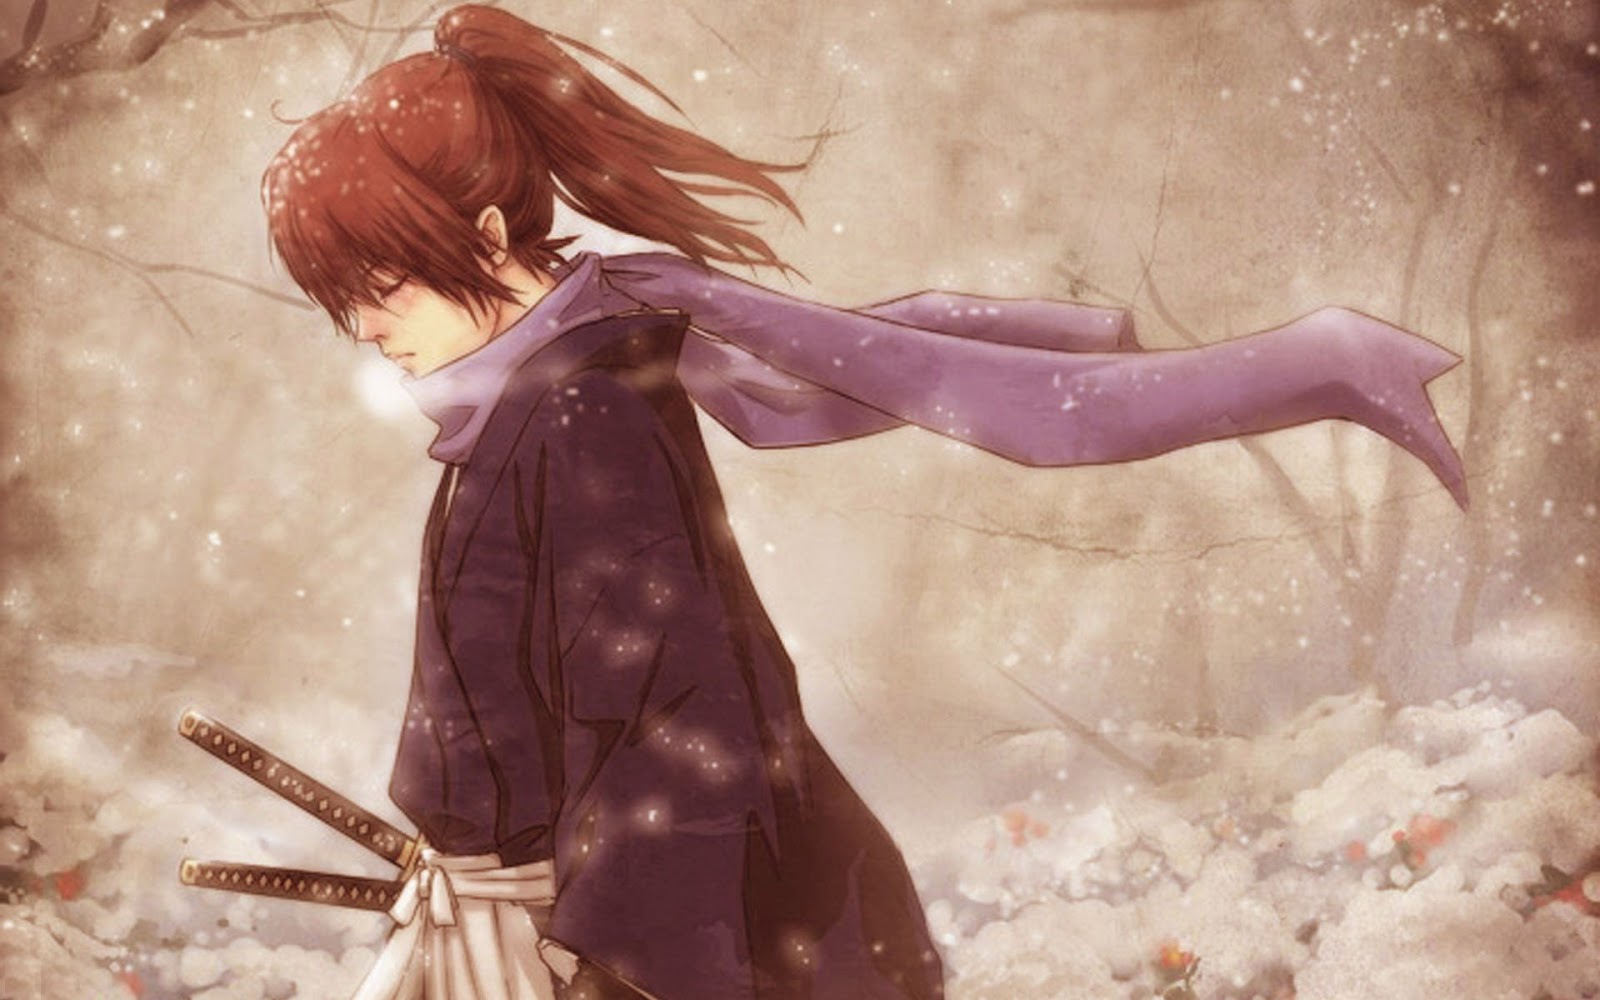 Kenshin Il Existe En Anime Aussi Je Le Conseille Beaucoup